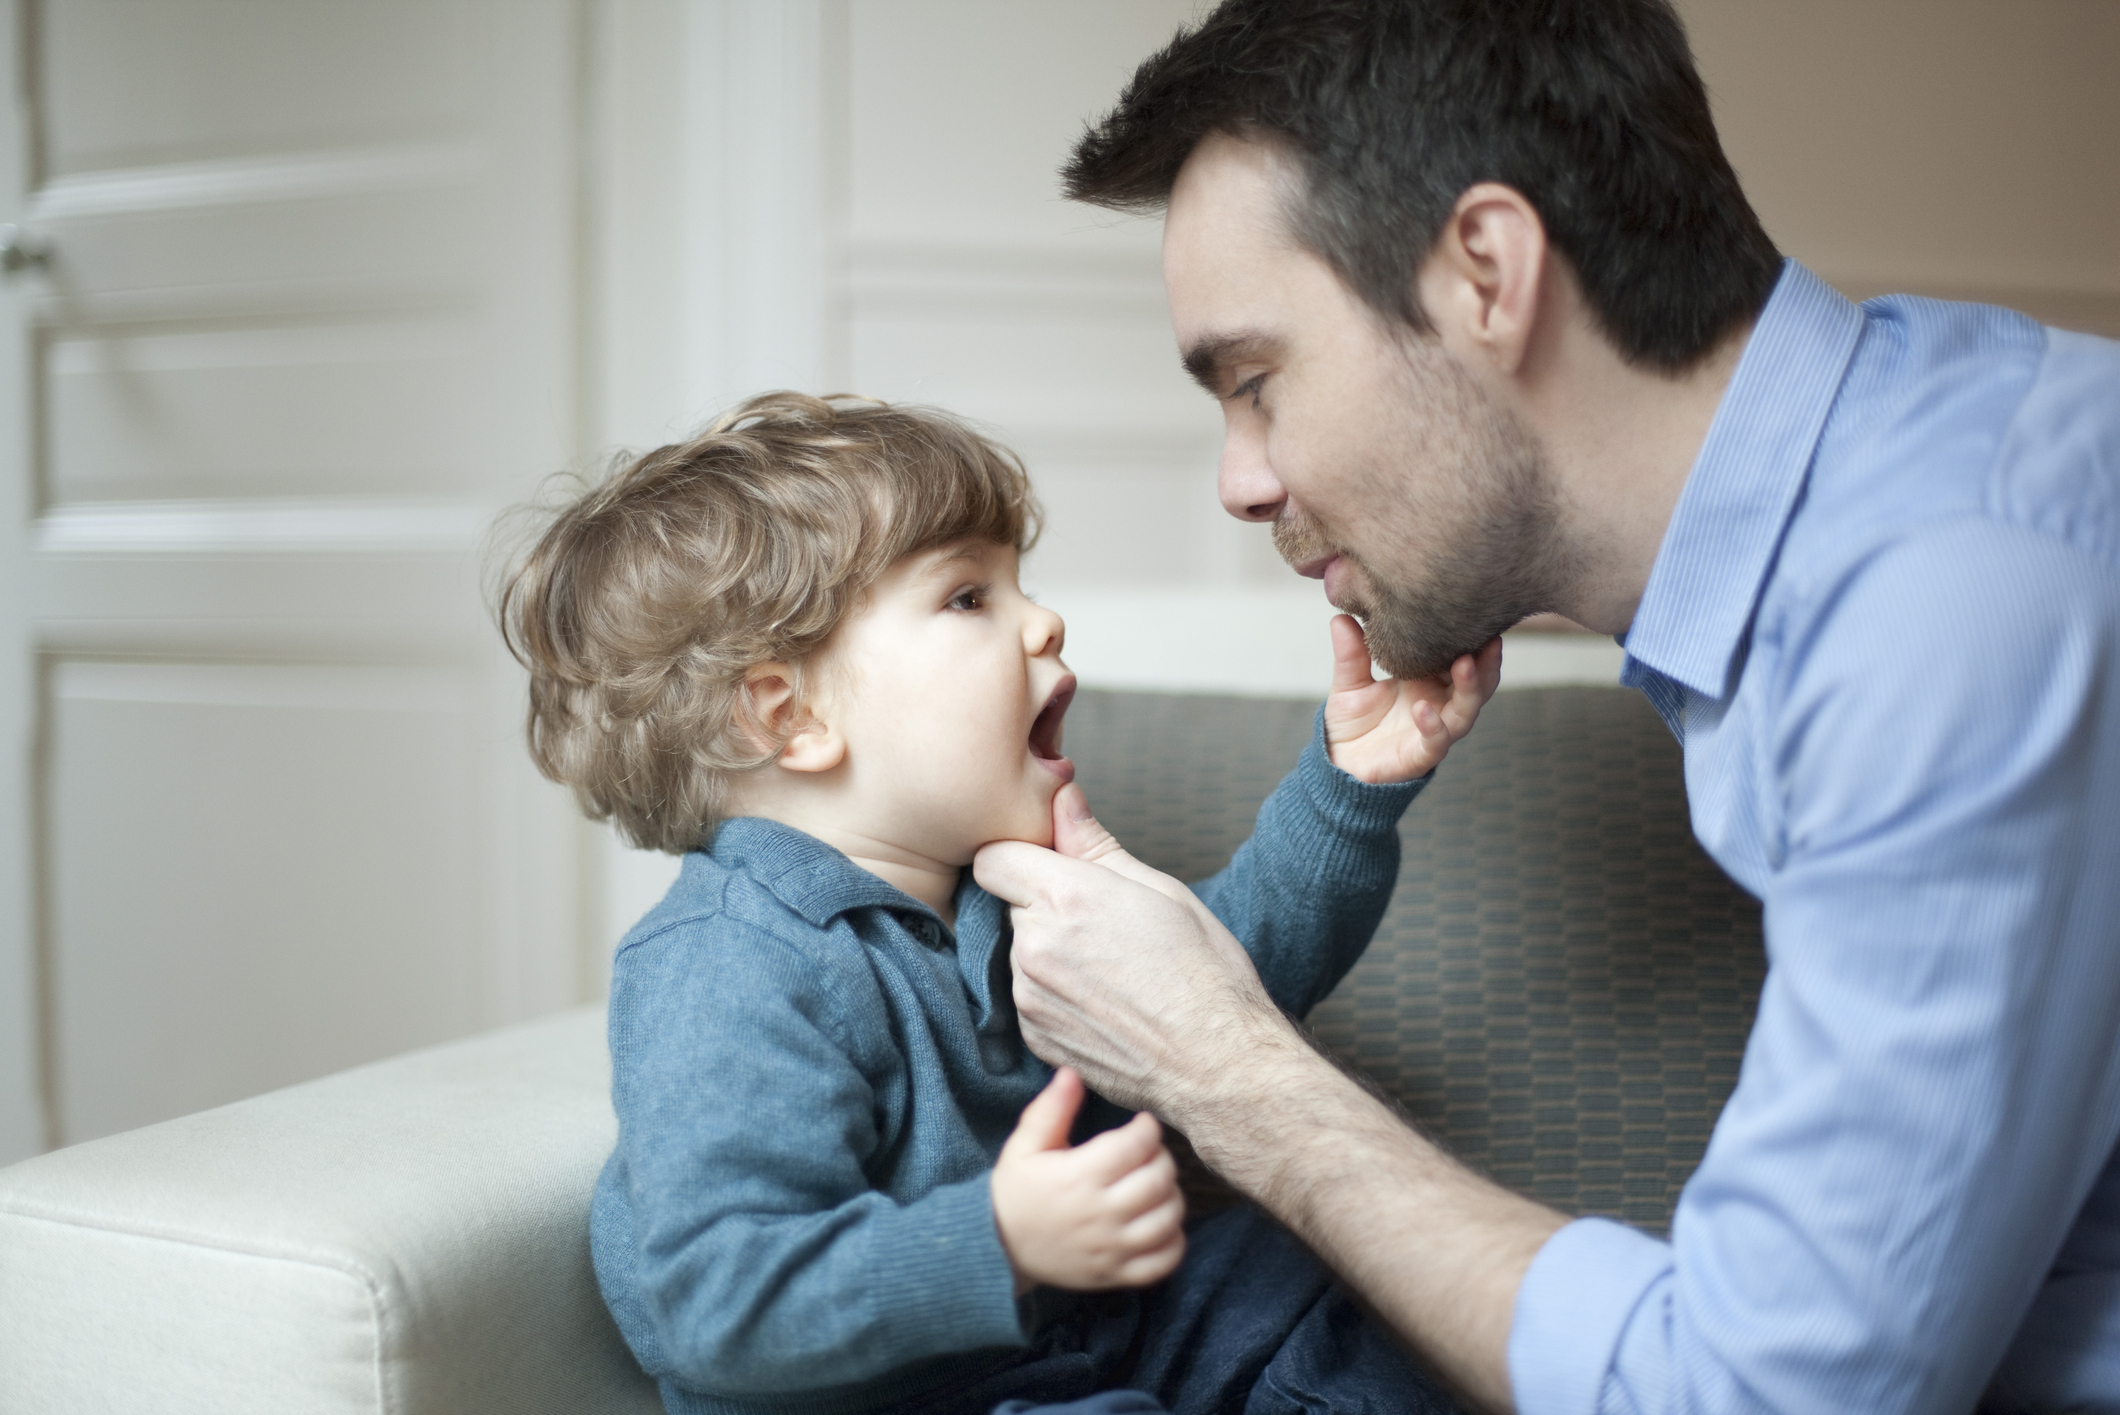 Parents’ Traits Predict Autism Features in Children